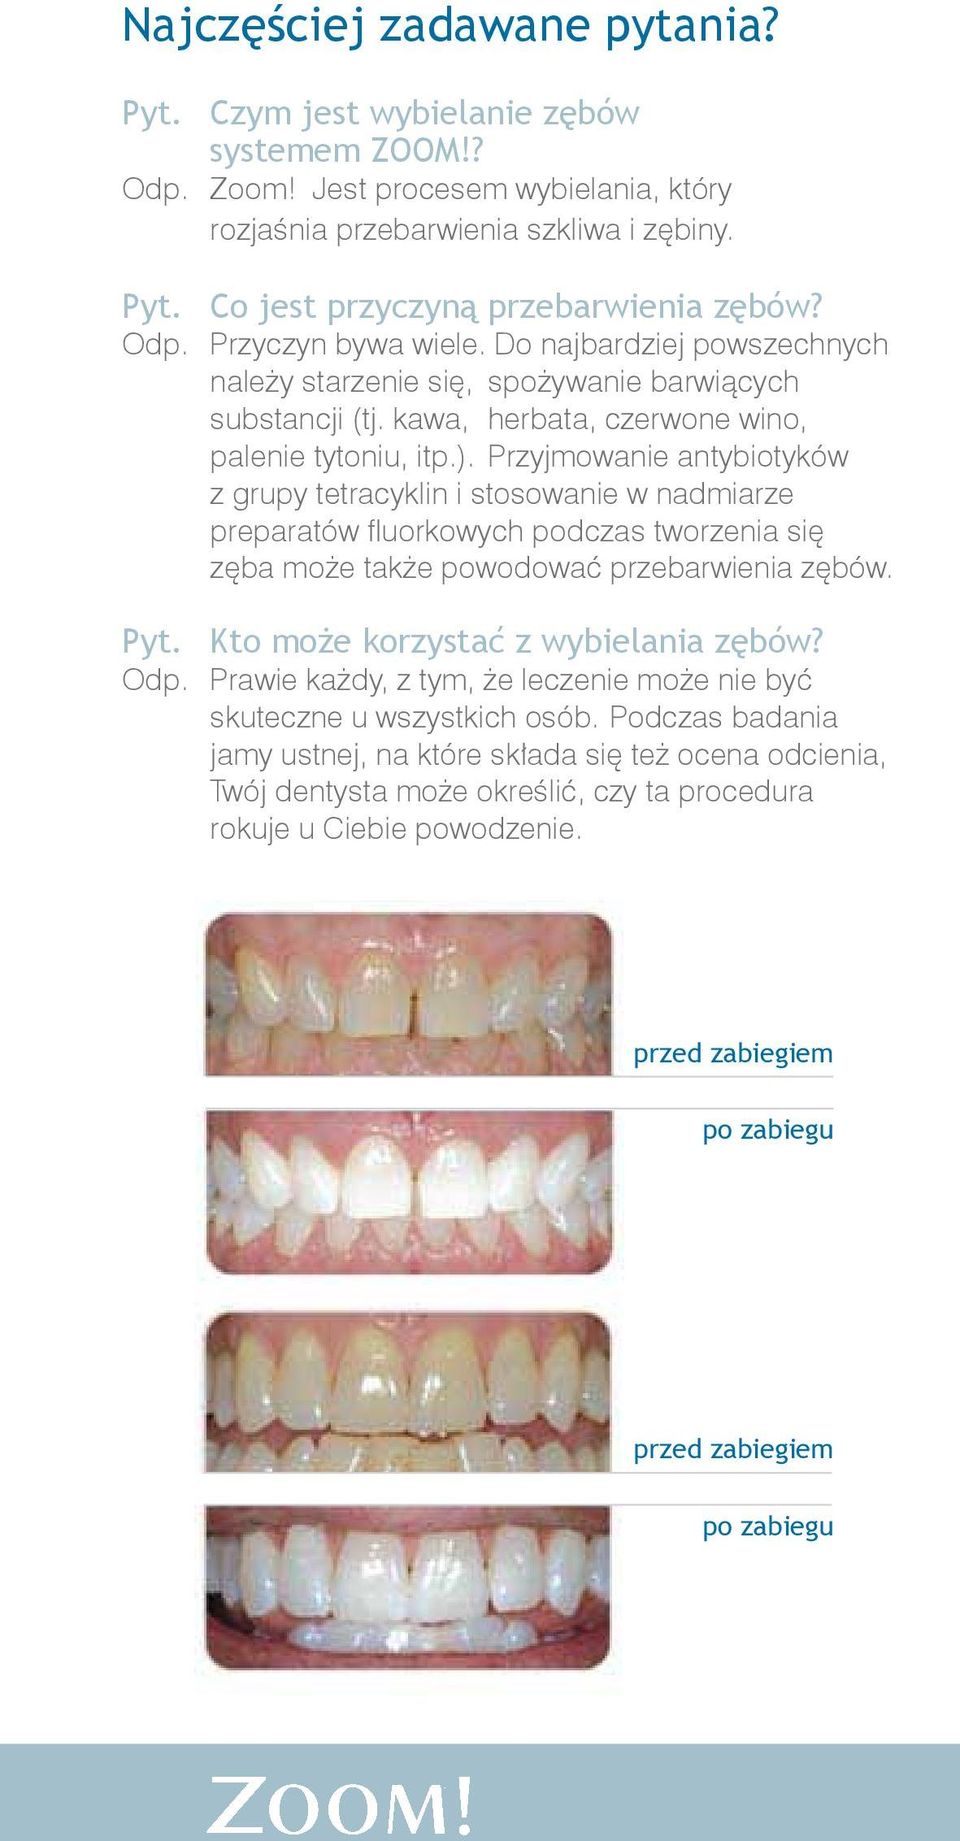 Przyjmowanie antybiotyków z grupy tetracyklin i stosowanie w nadmiarze preparatów fluorkowych podczas tworzenia się zęba może także powodować przebarwienia zębów. Pyt.